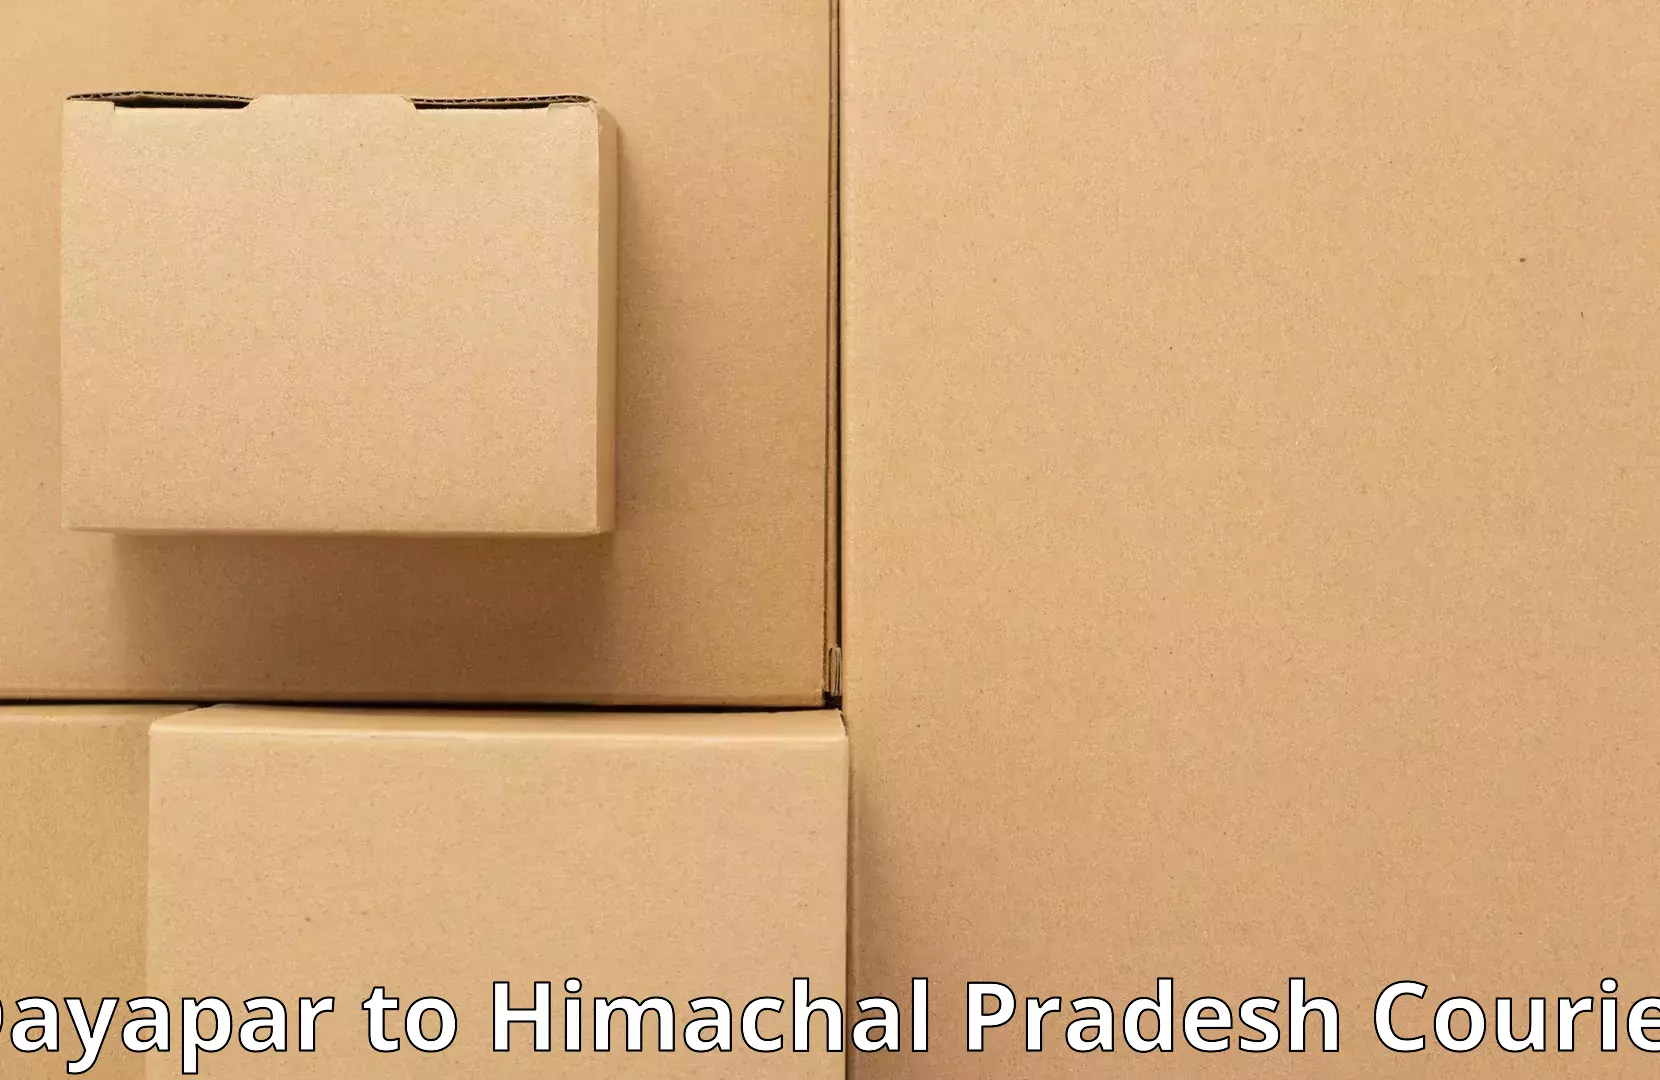 Furniture moving experts Dayapar to Himachal Pradesh